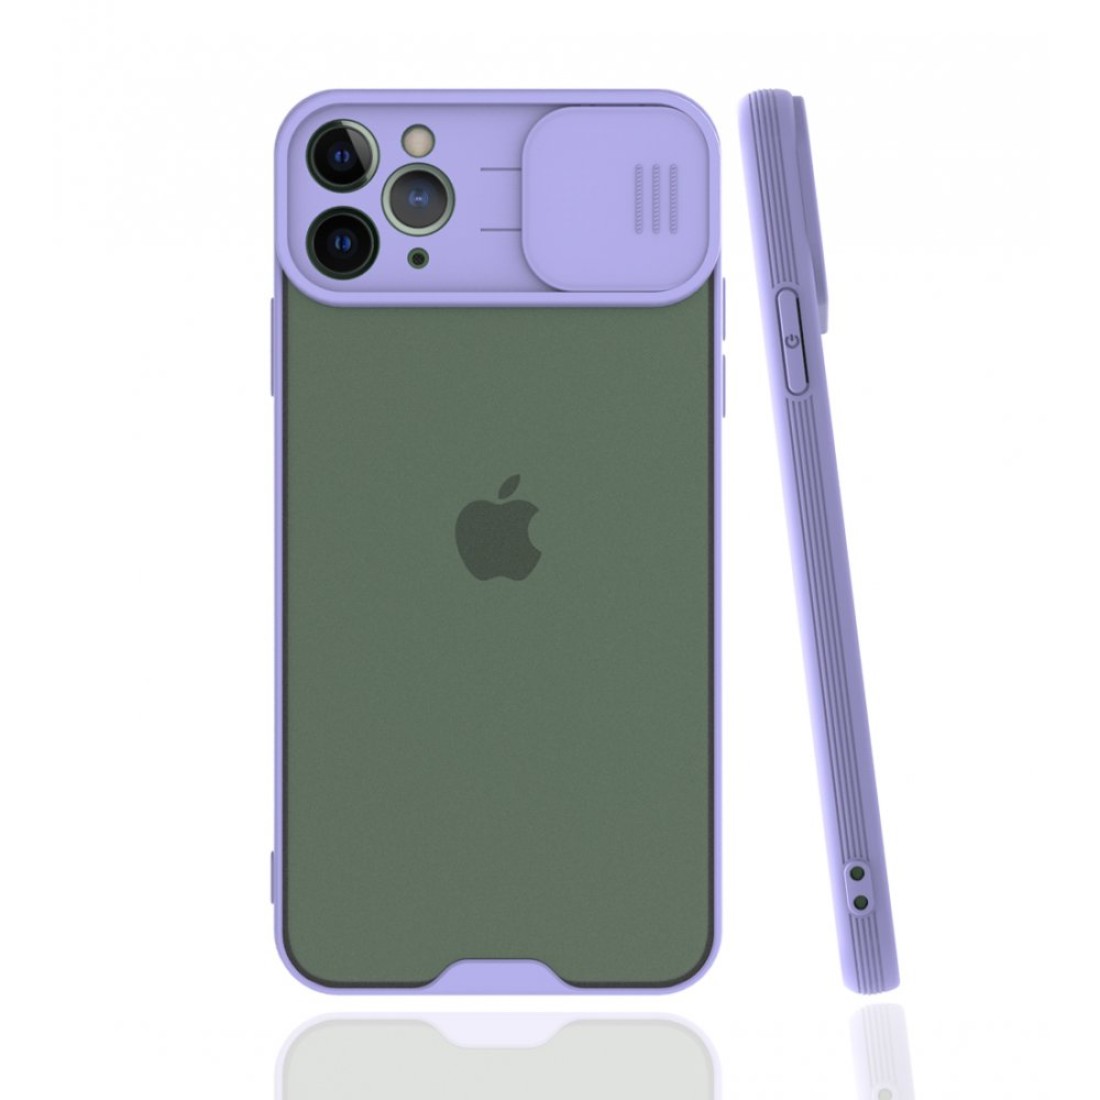 Apple iPhone 11 Pro Max Kılıf Platin Kamera Koruma Silikon - Lila